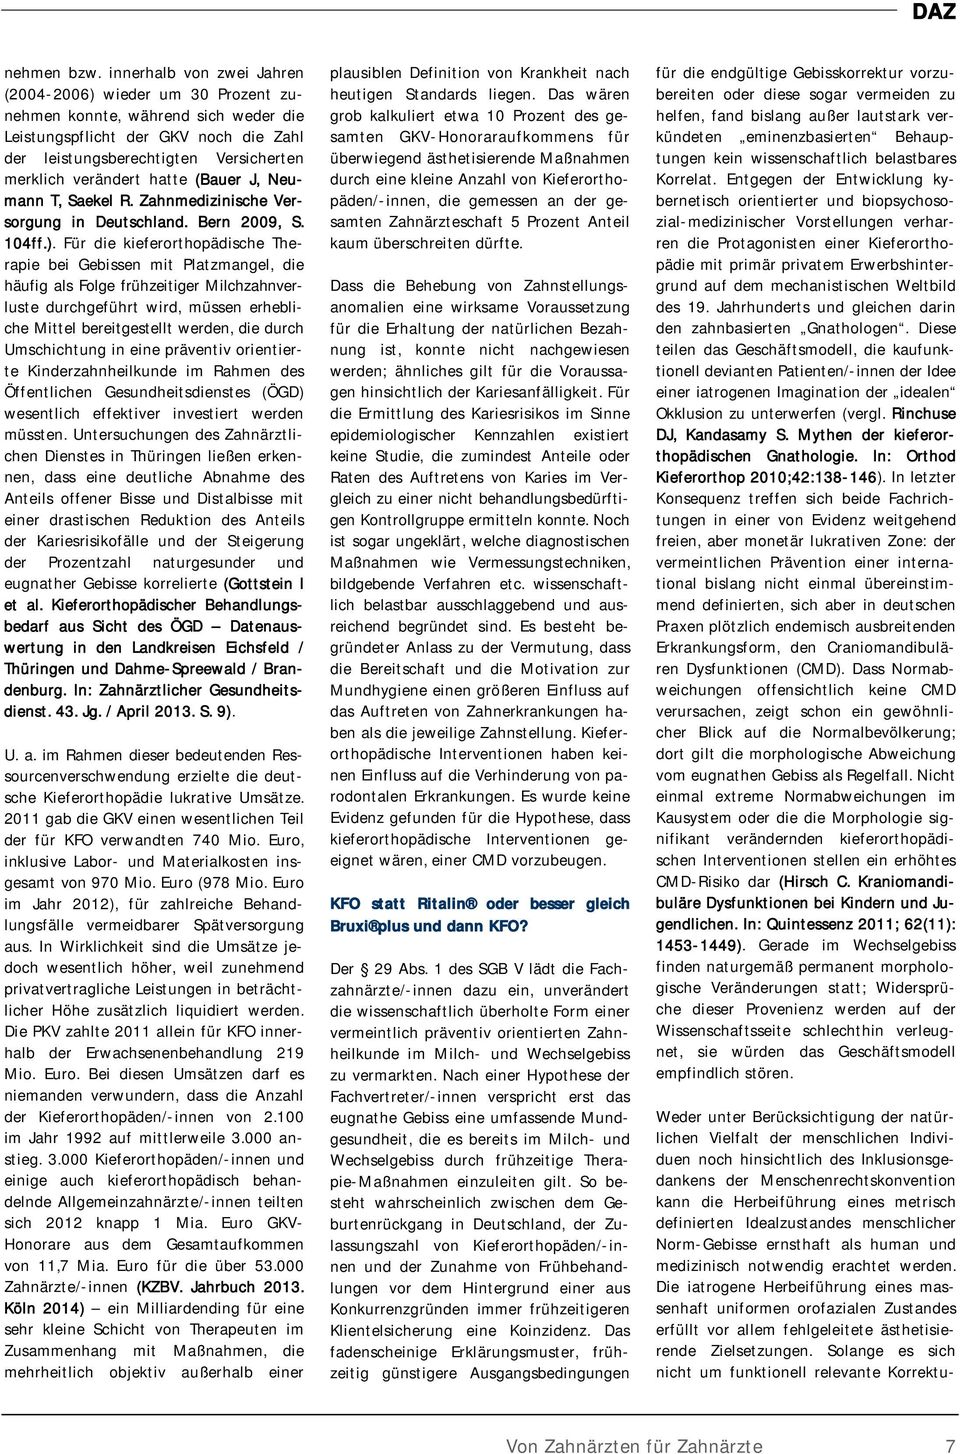 hatte (Bauer J, Neumann T, Saekel R. Zahnmedizinische Versorgung in Deutschland. Bern 2009, S. 104ff.).